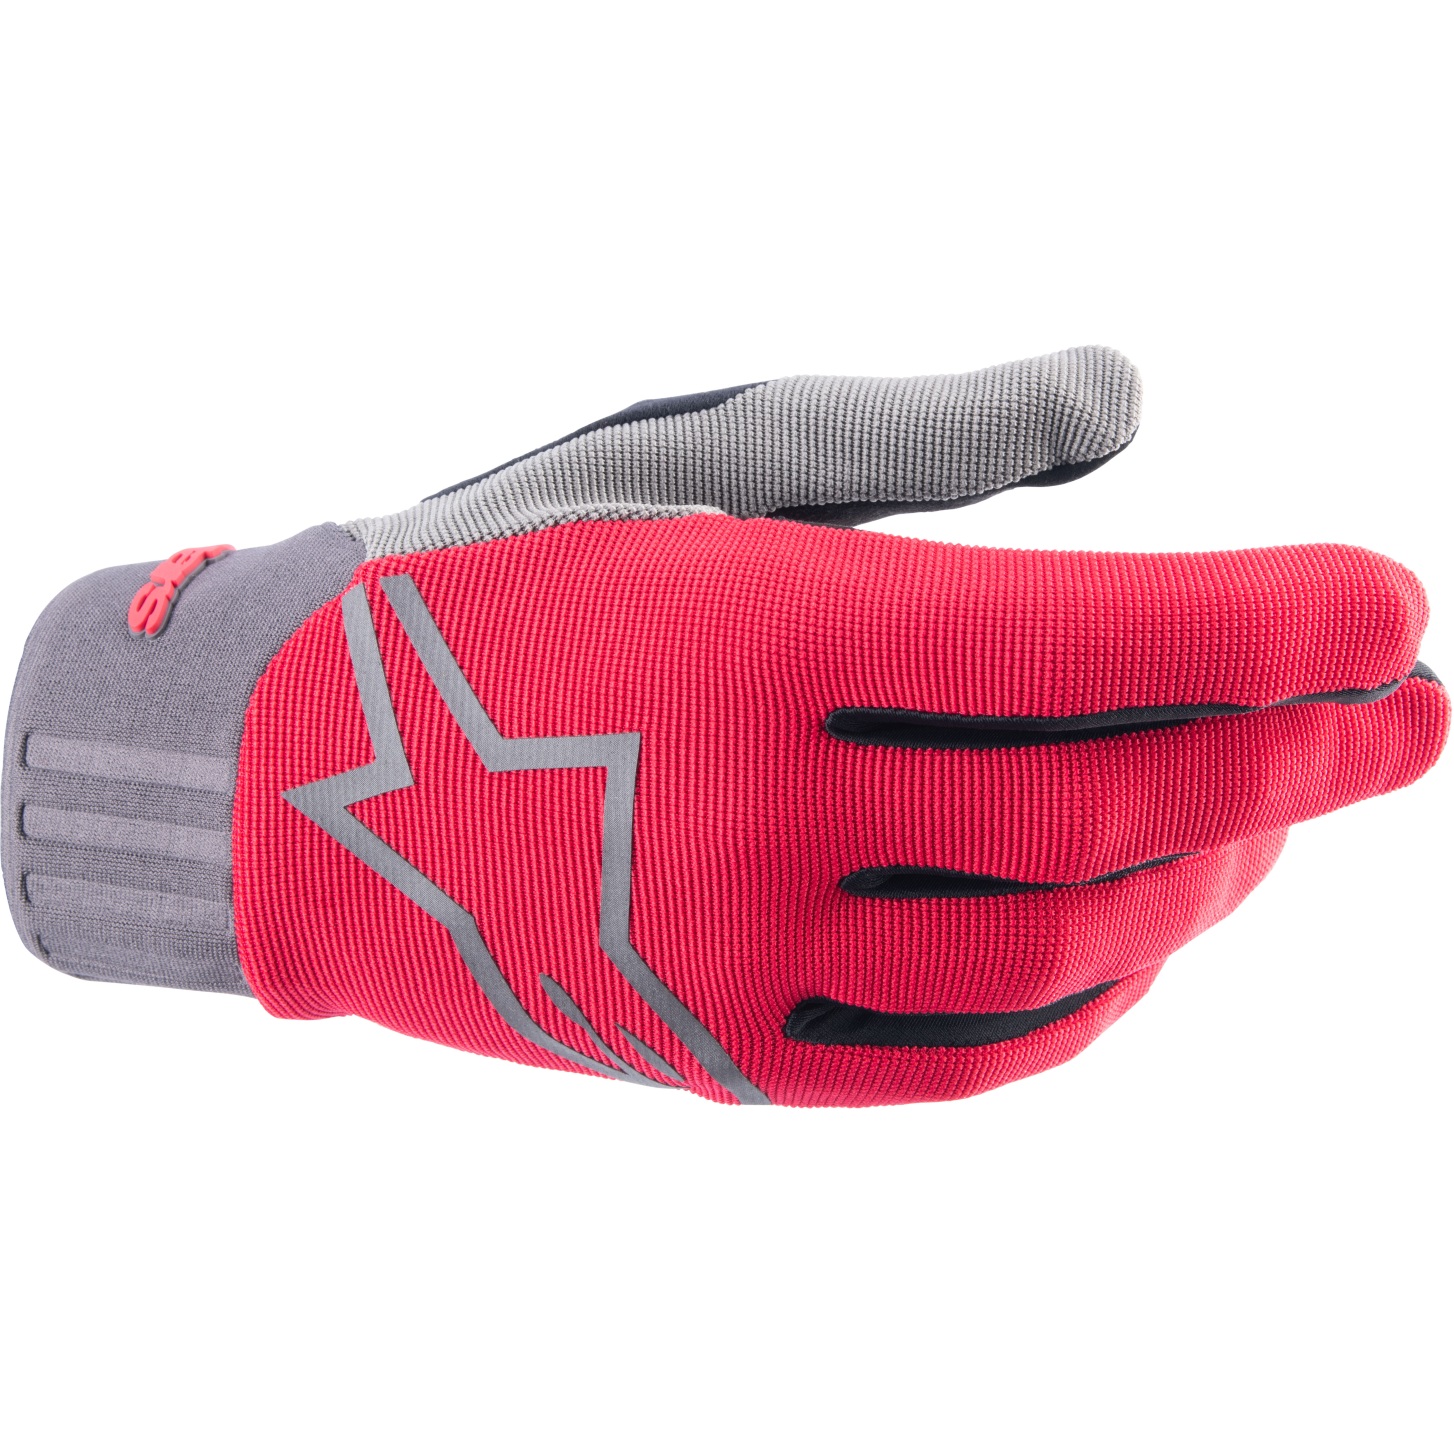 Produktbild von Alpinestars A-Dura Handschuhe - red fluo